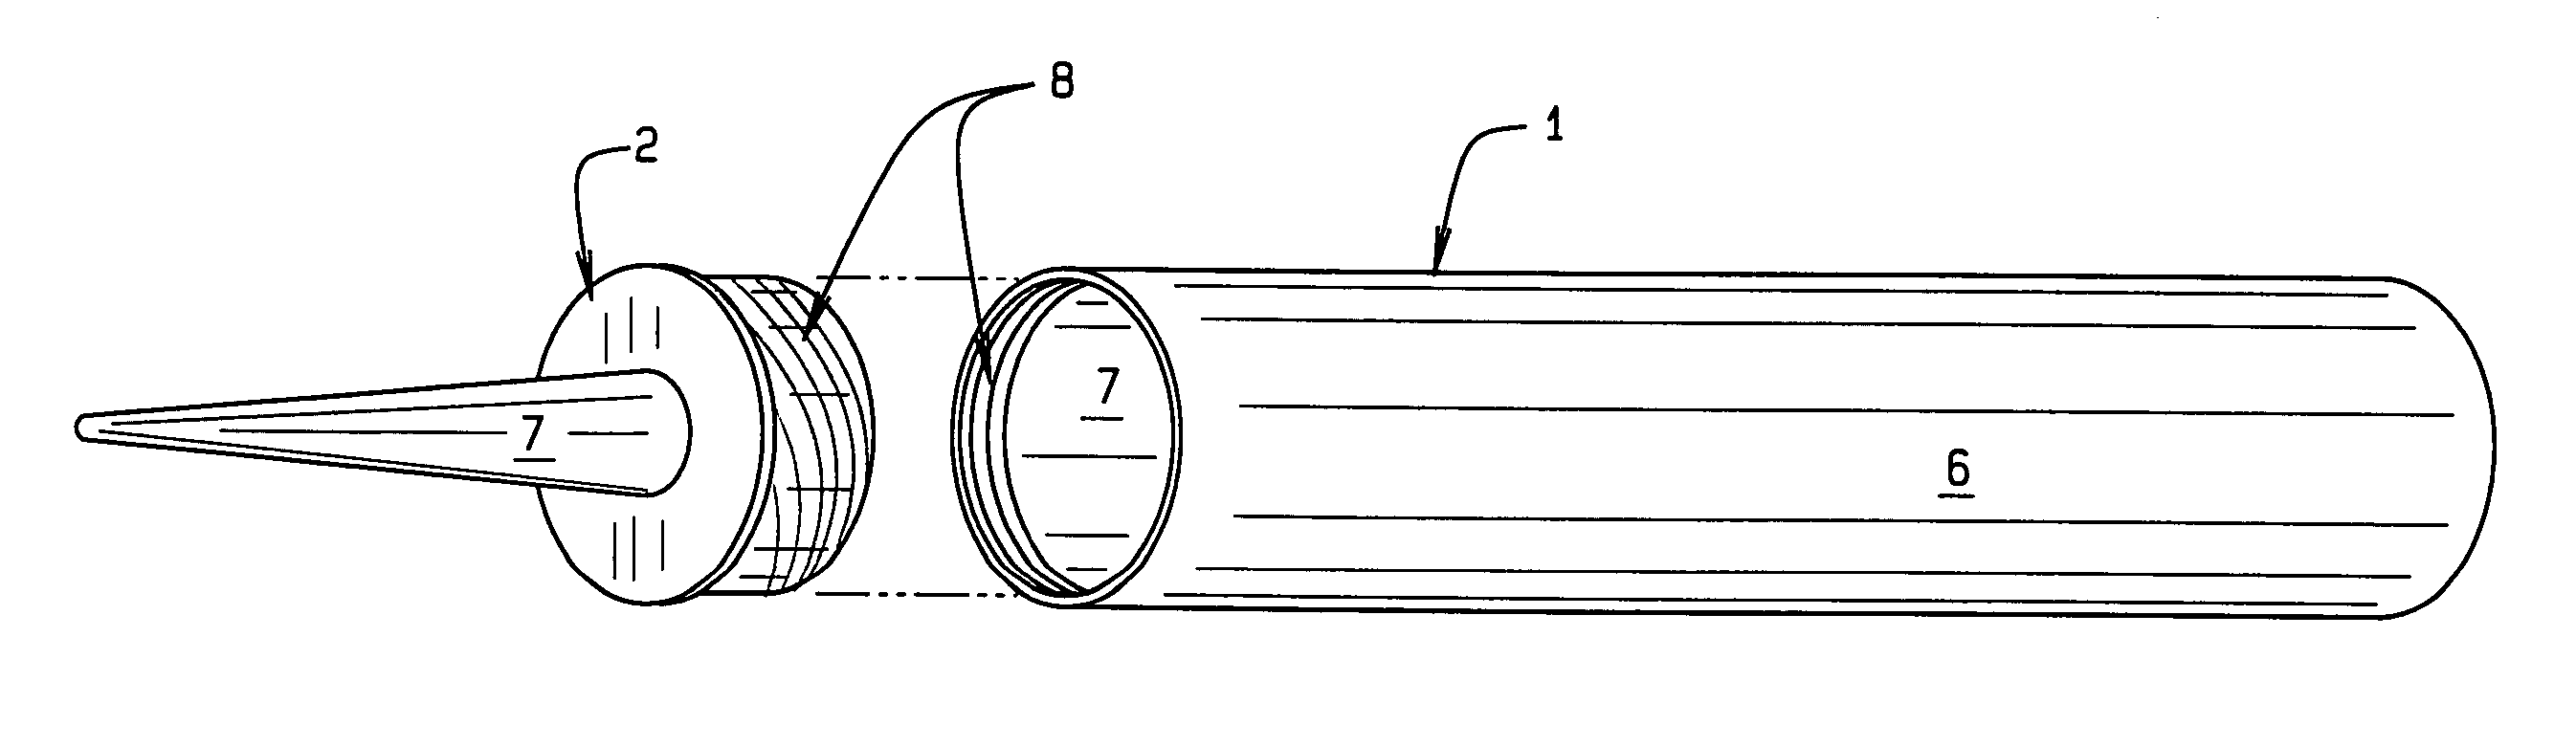 Fastener engaging caulking tube nozzle